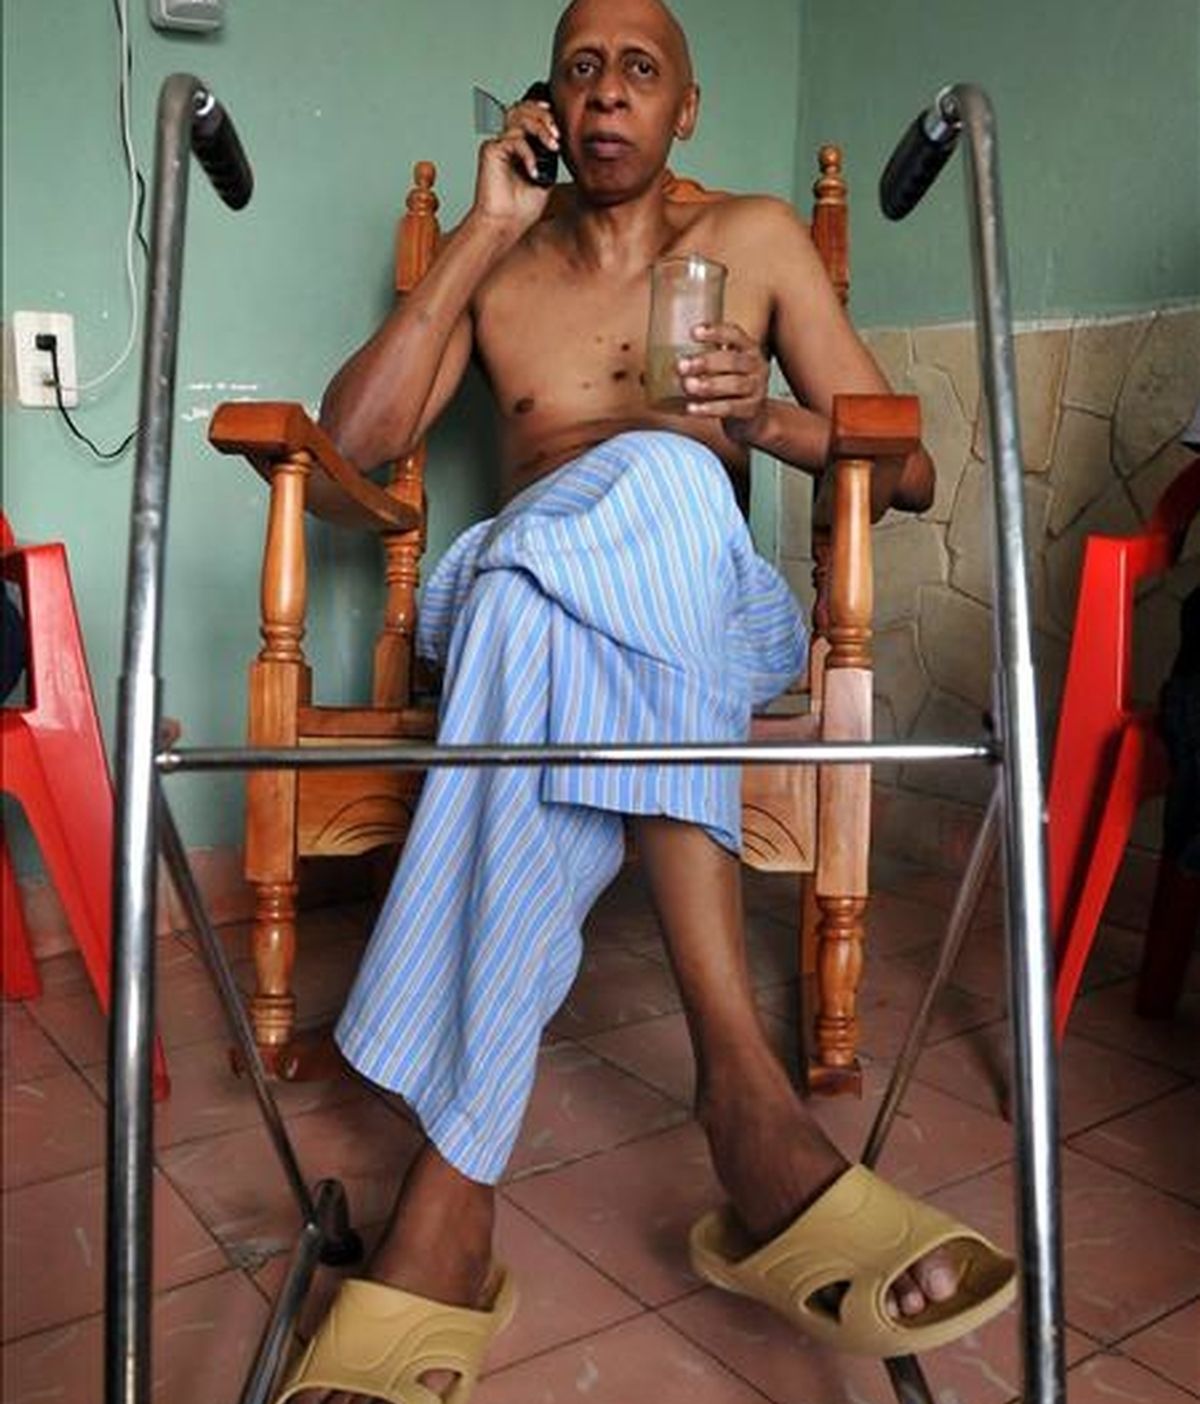 El disidente cubano Guillermo Fariñas en el día en que fue informado de su designación para el premio Sájarov 2010 a la libertad de conciencia, en Santa Clara (Cuba). EFE/Archivo